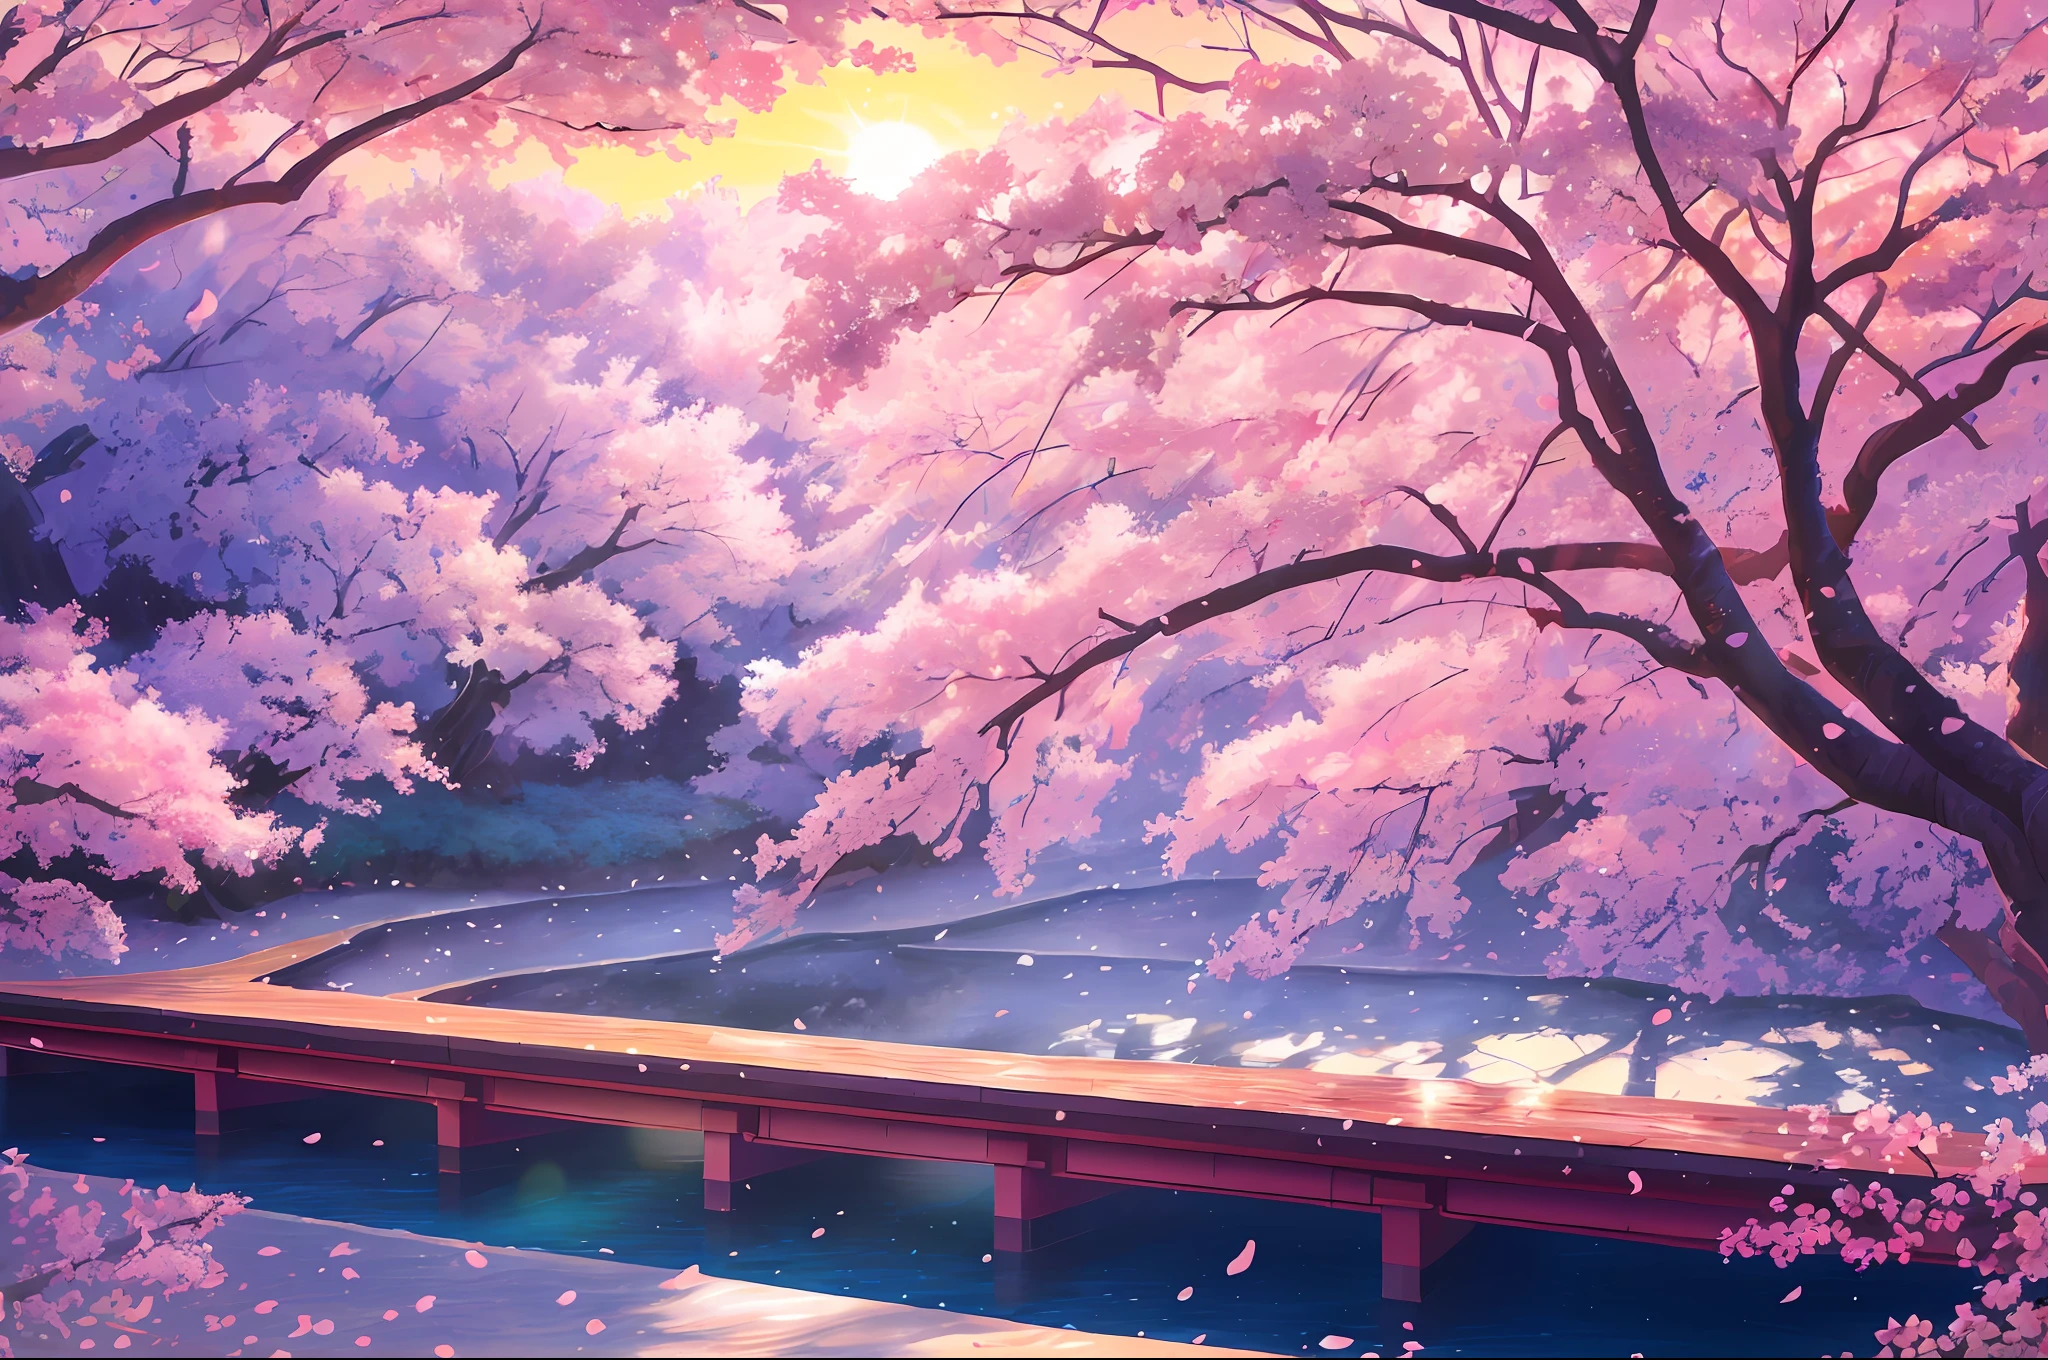 (fotorealistisch:1.2), Aufklärung：Hidenori Matsubara, Eine lebendige Fantasielandschaft, Kirschblütenblätter fallen, Beleuchtet von einem warmen und einladenden Sonnenuntergang, Weiche Schatten und Texturen, und ein subtiles Leuchten